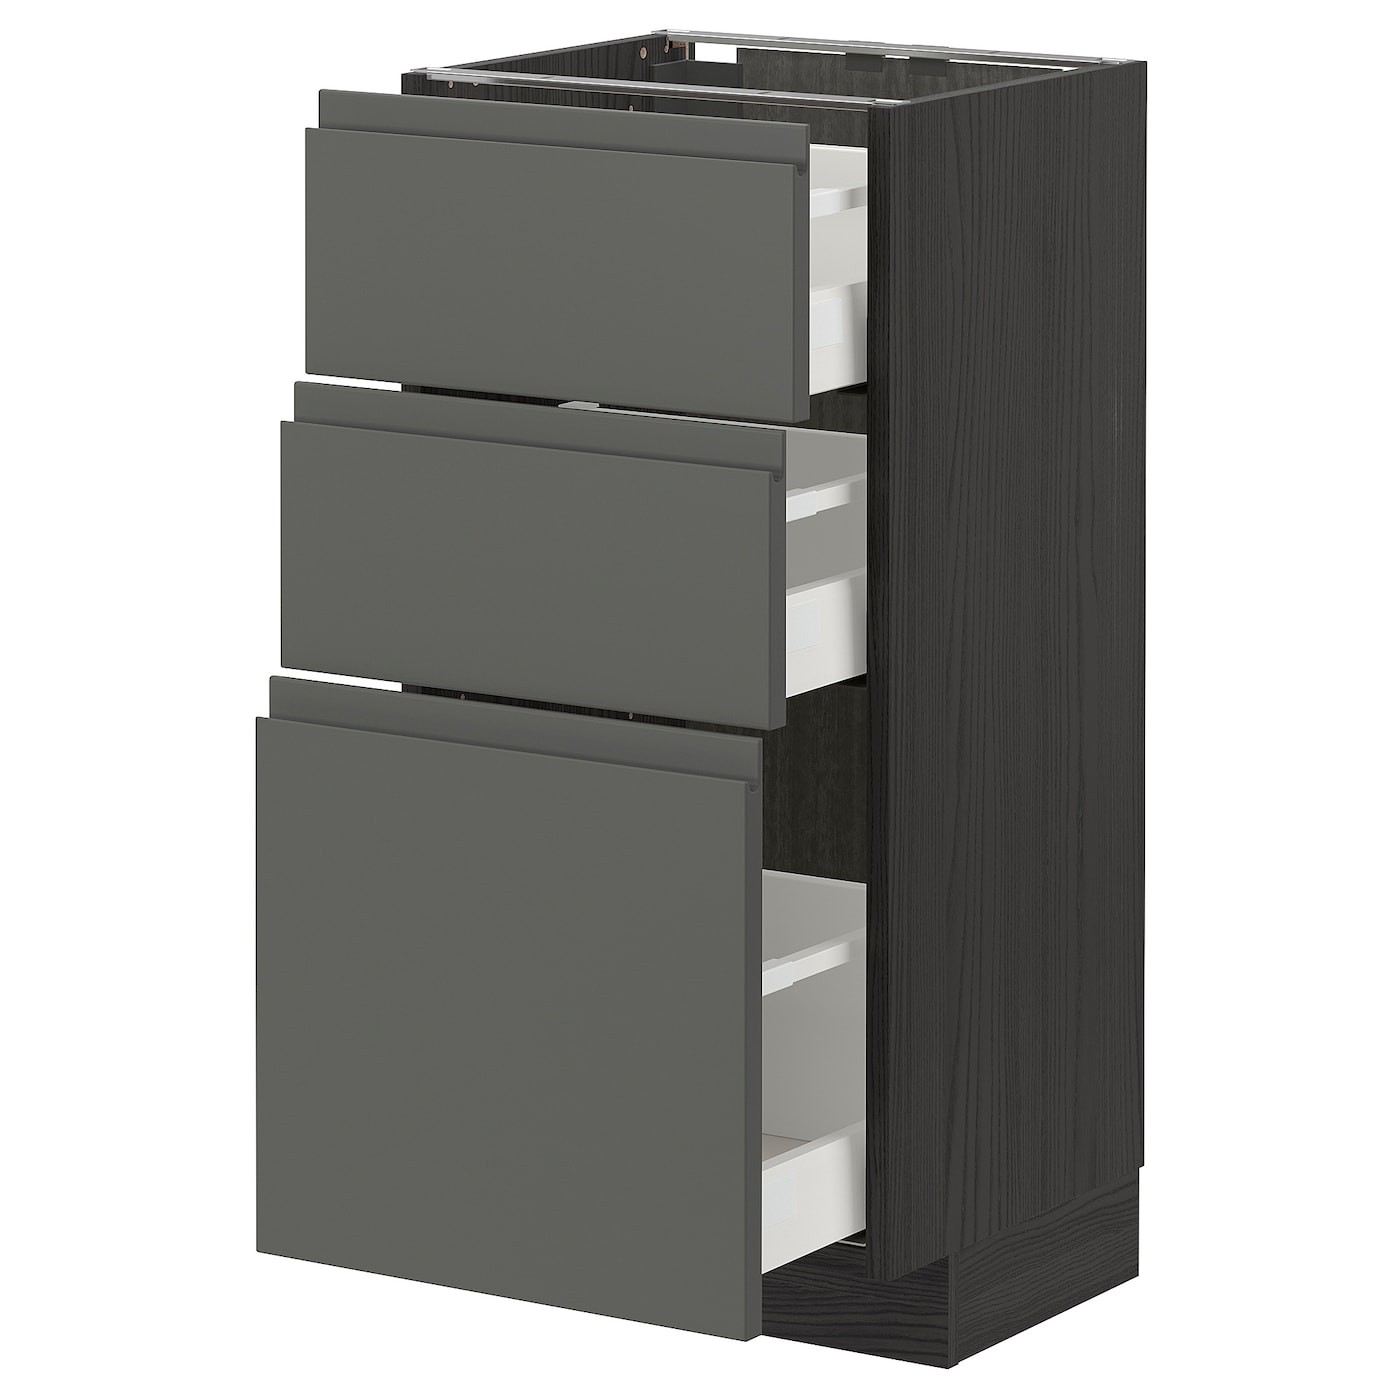 Напольный шкаф - IKEA METOD MAXIMERA, 88x39x40см, темно-серый/серый, МЕТОД МАКСИМЕРА ИКЕА